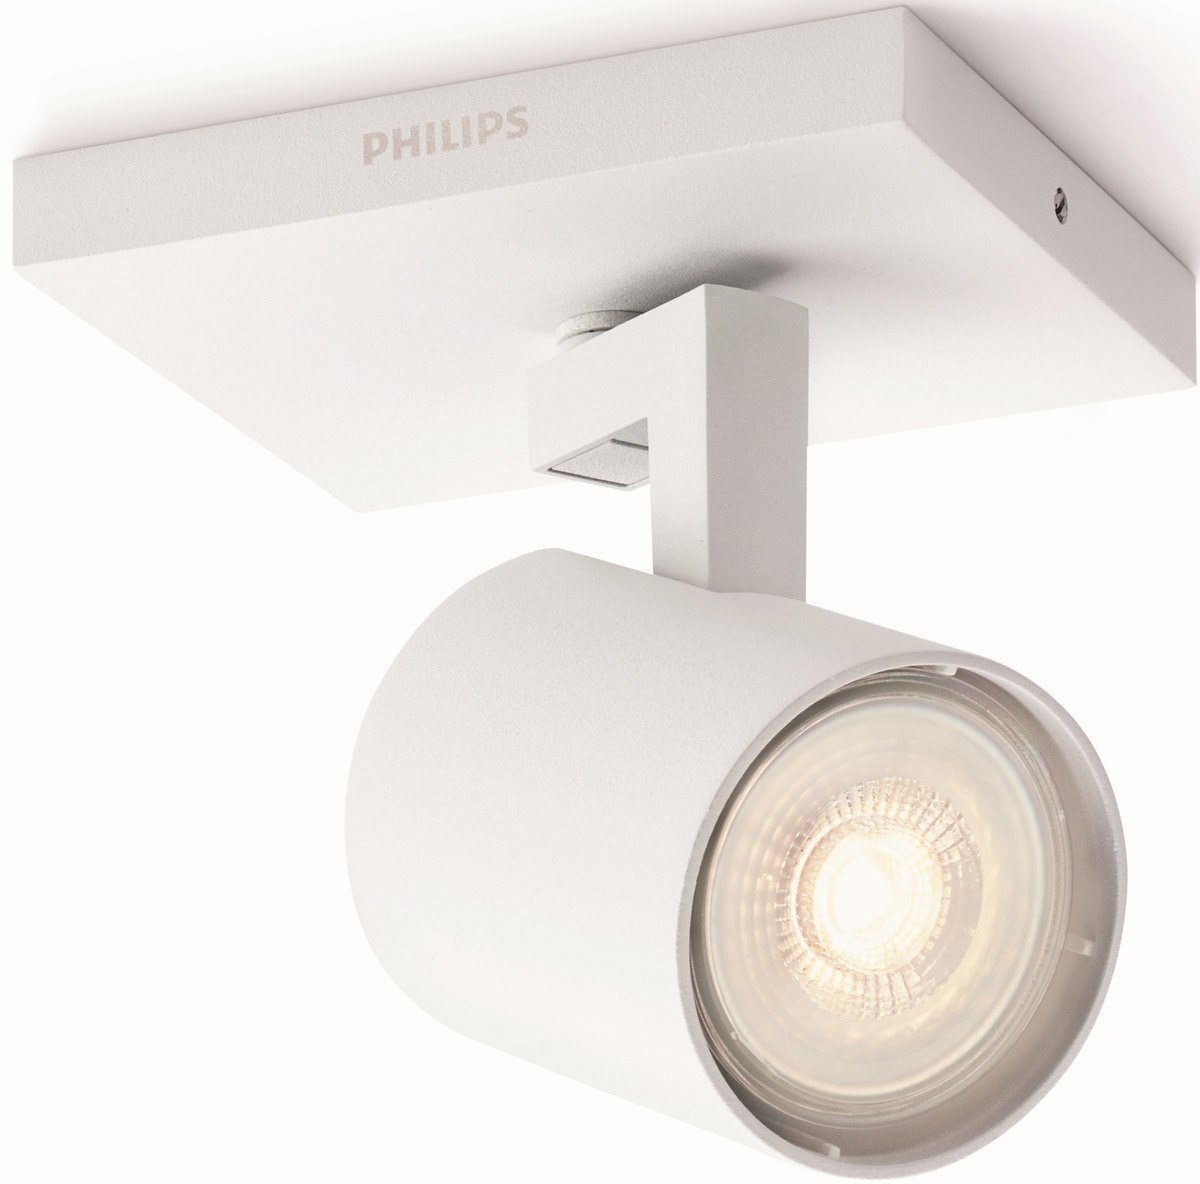 LED Spot Weiß, Warmweiß, Philips LED Runner, 230lm, wechselbar, 1flg. Deckenspot myLiving Deckenstrahler